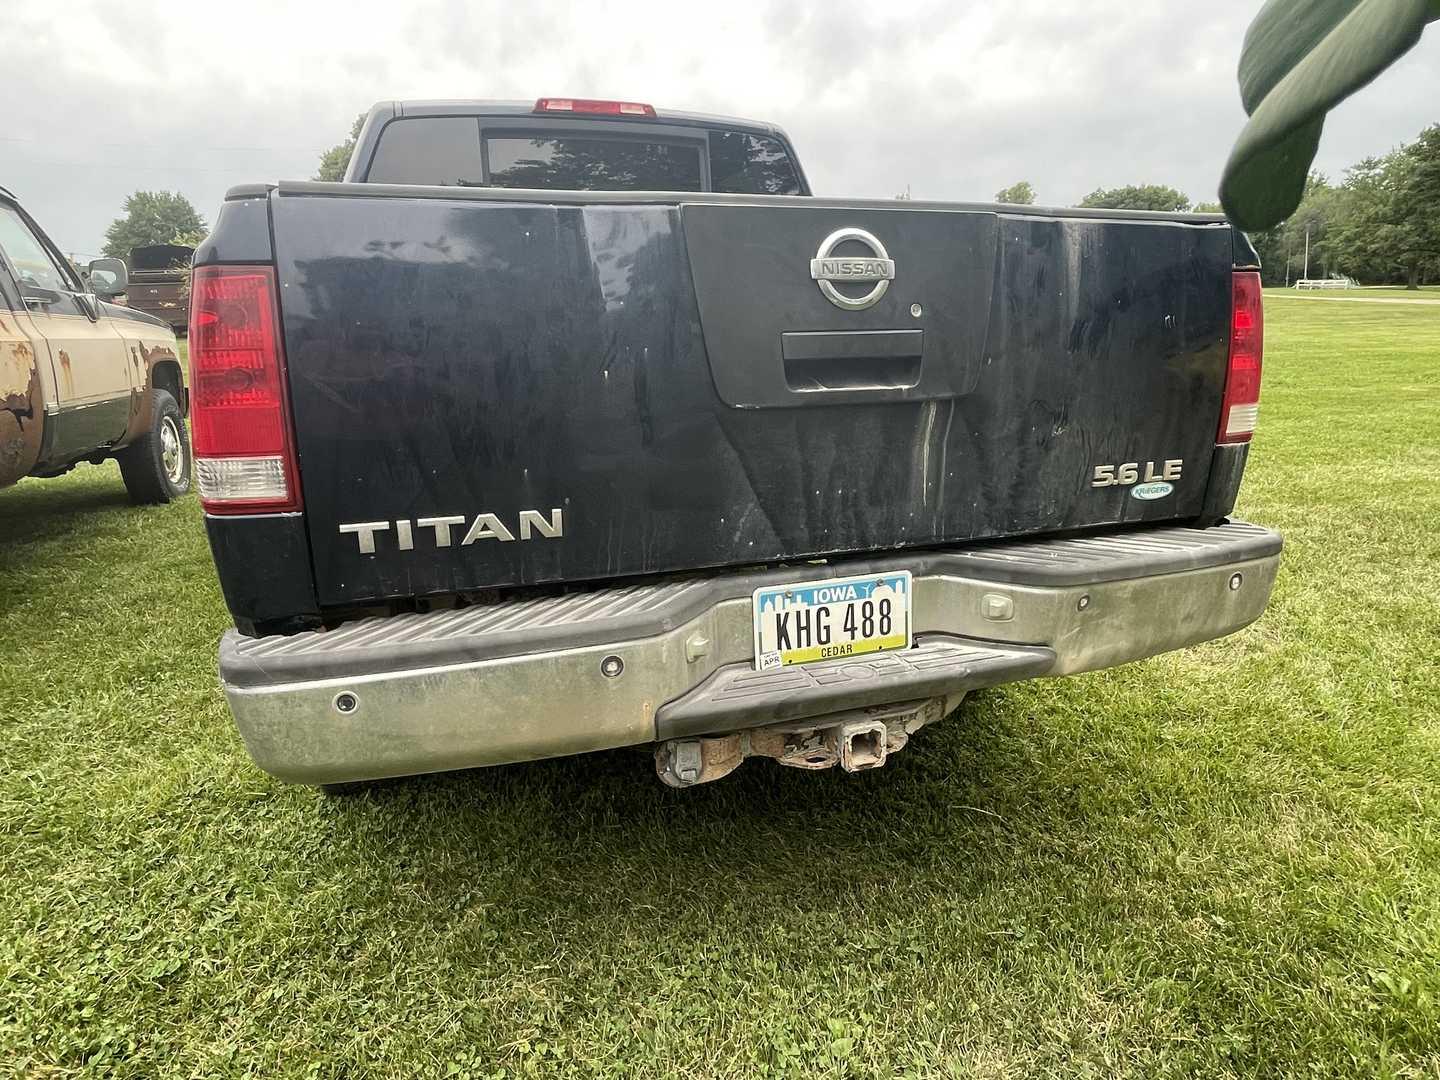 Nissan V8 Titan